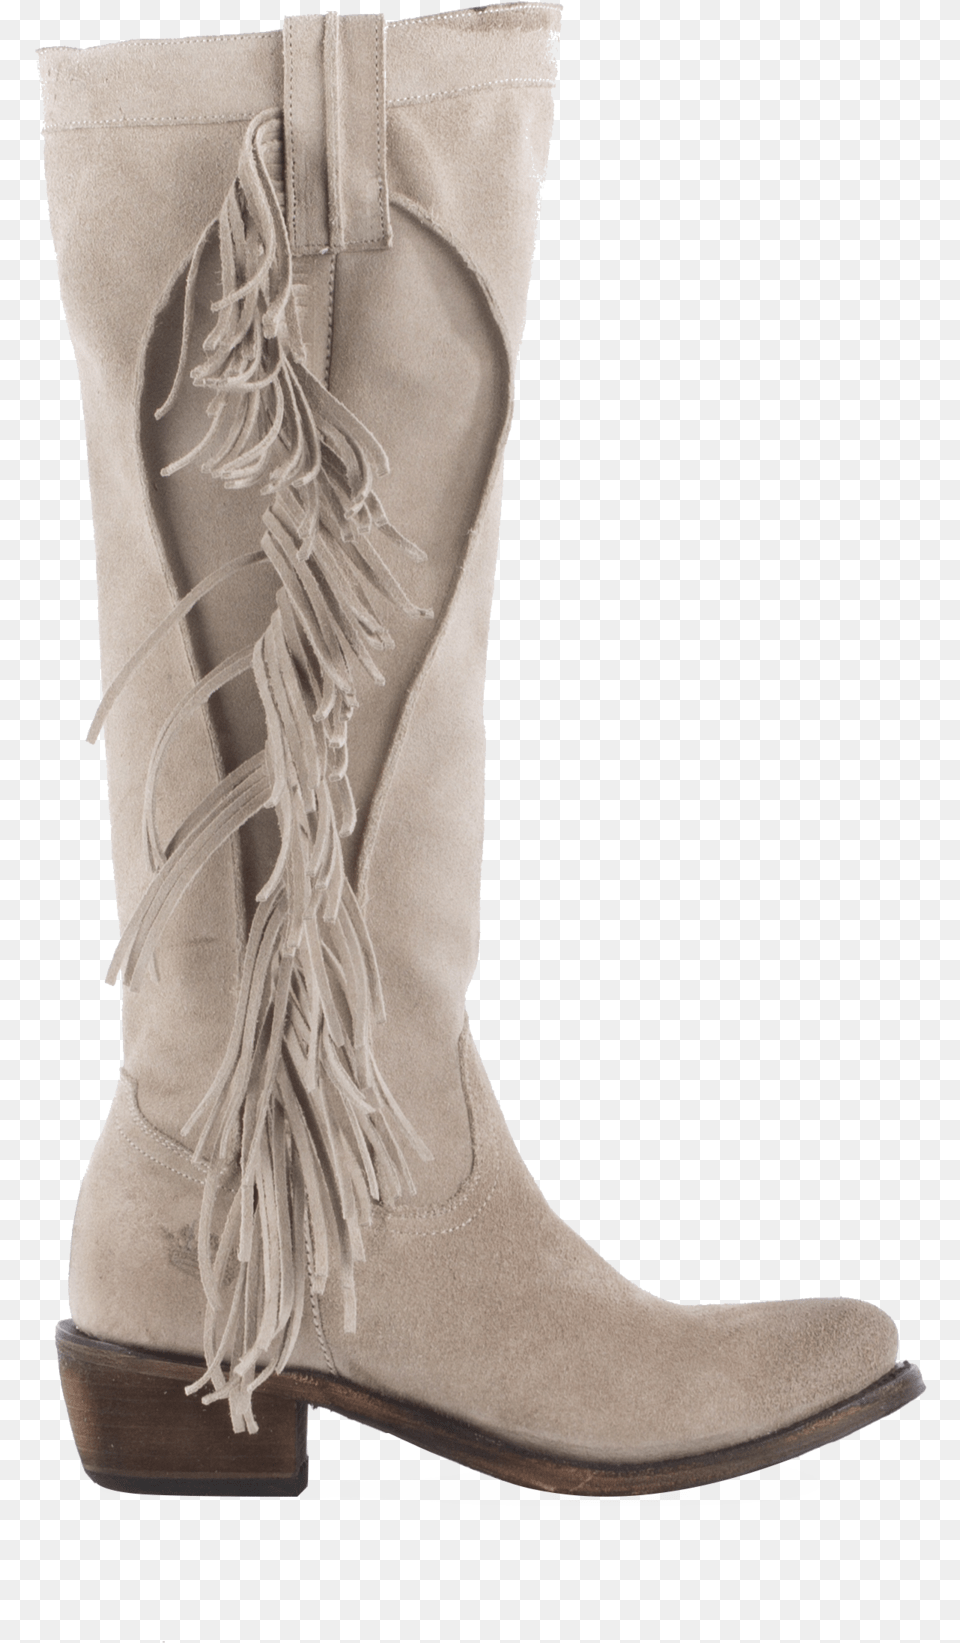 Texas Tumbleweed Ladies Boot Work Boots, Clothing, Footwear, Shoe, High Heel Png